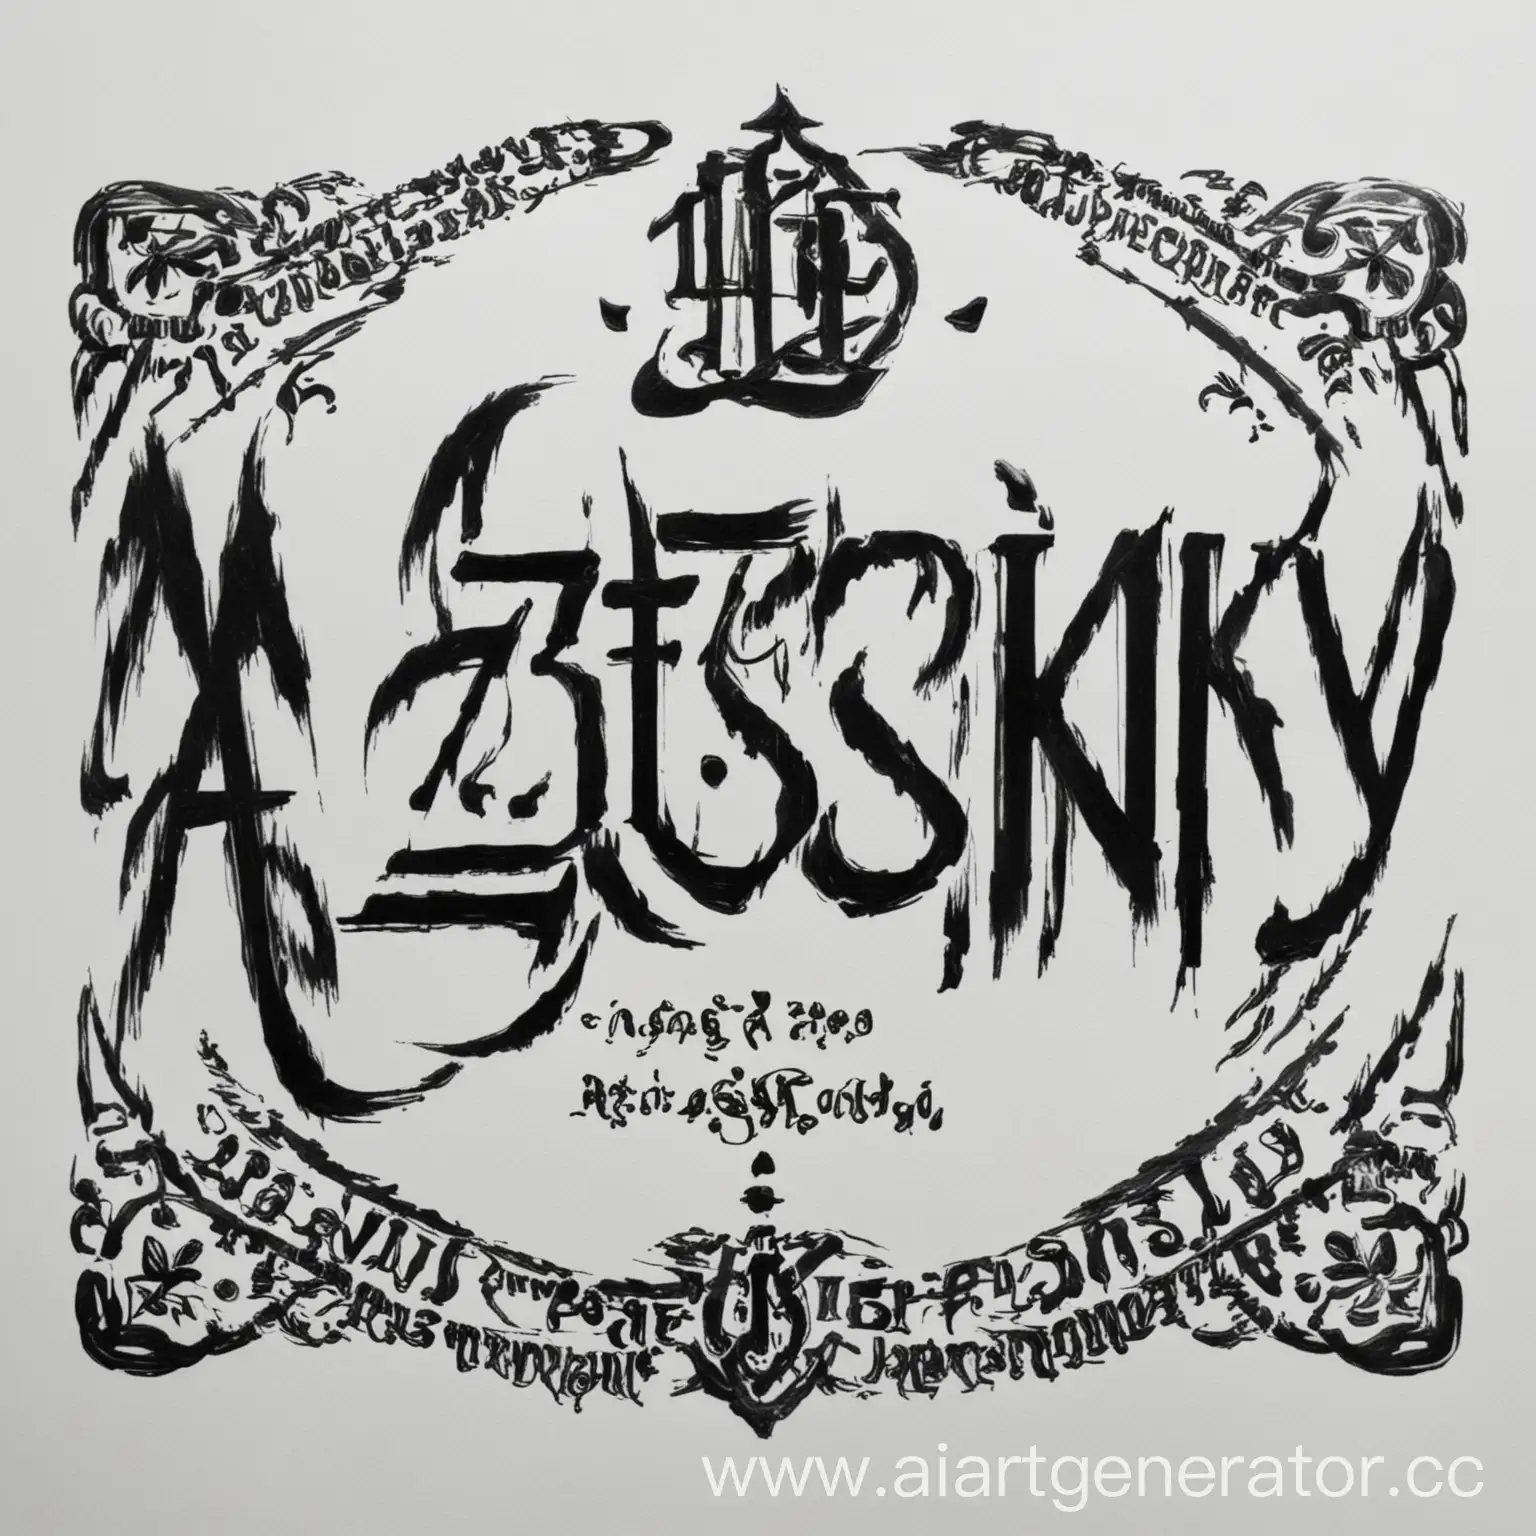 надпись Azotskiy чёрным цветом  на белом фоне без добавлений других надписей 
